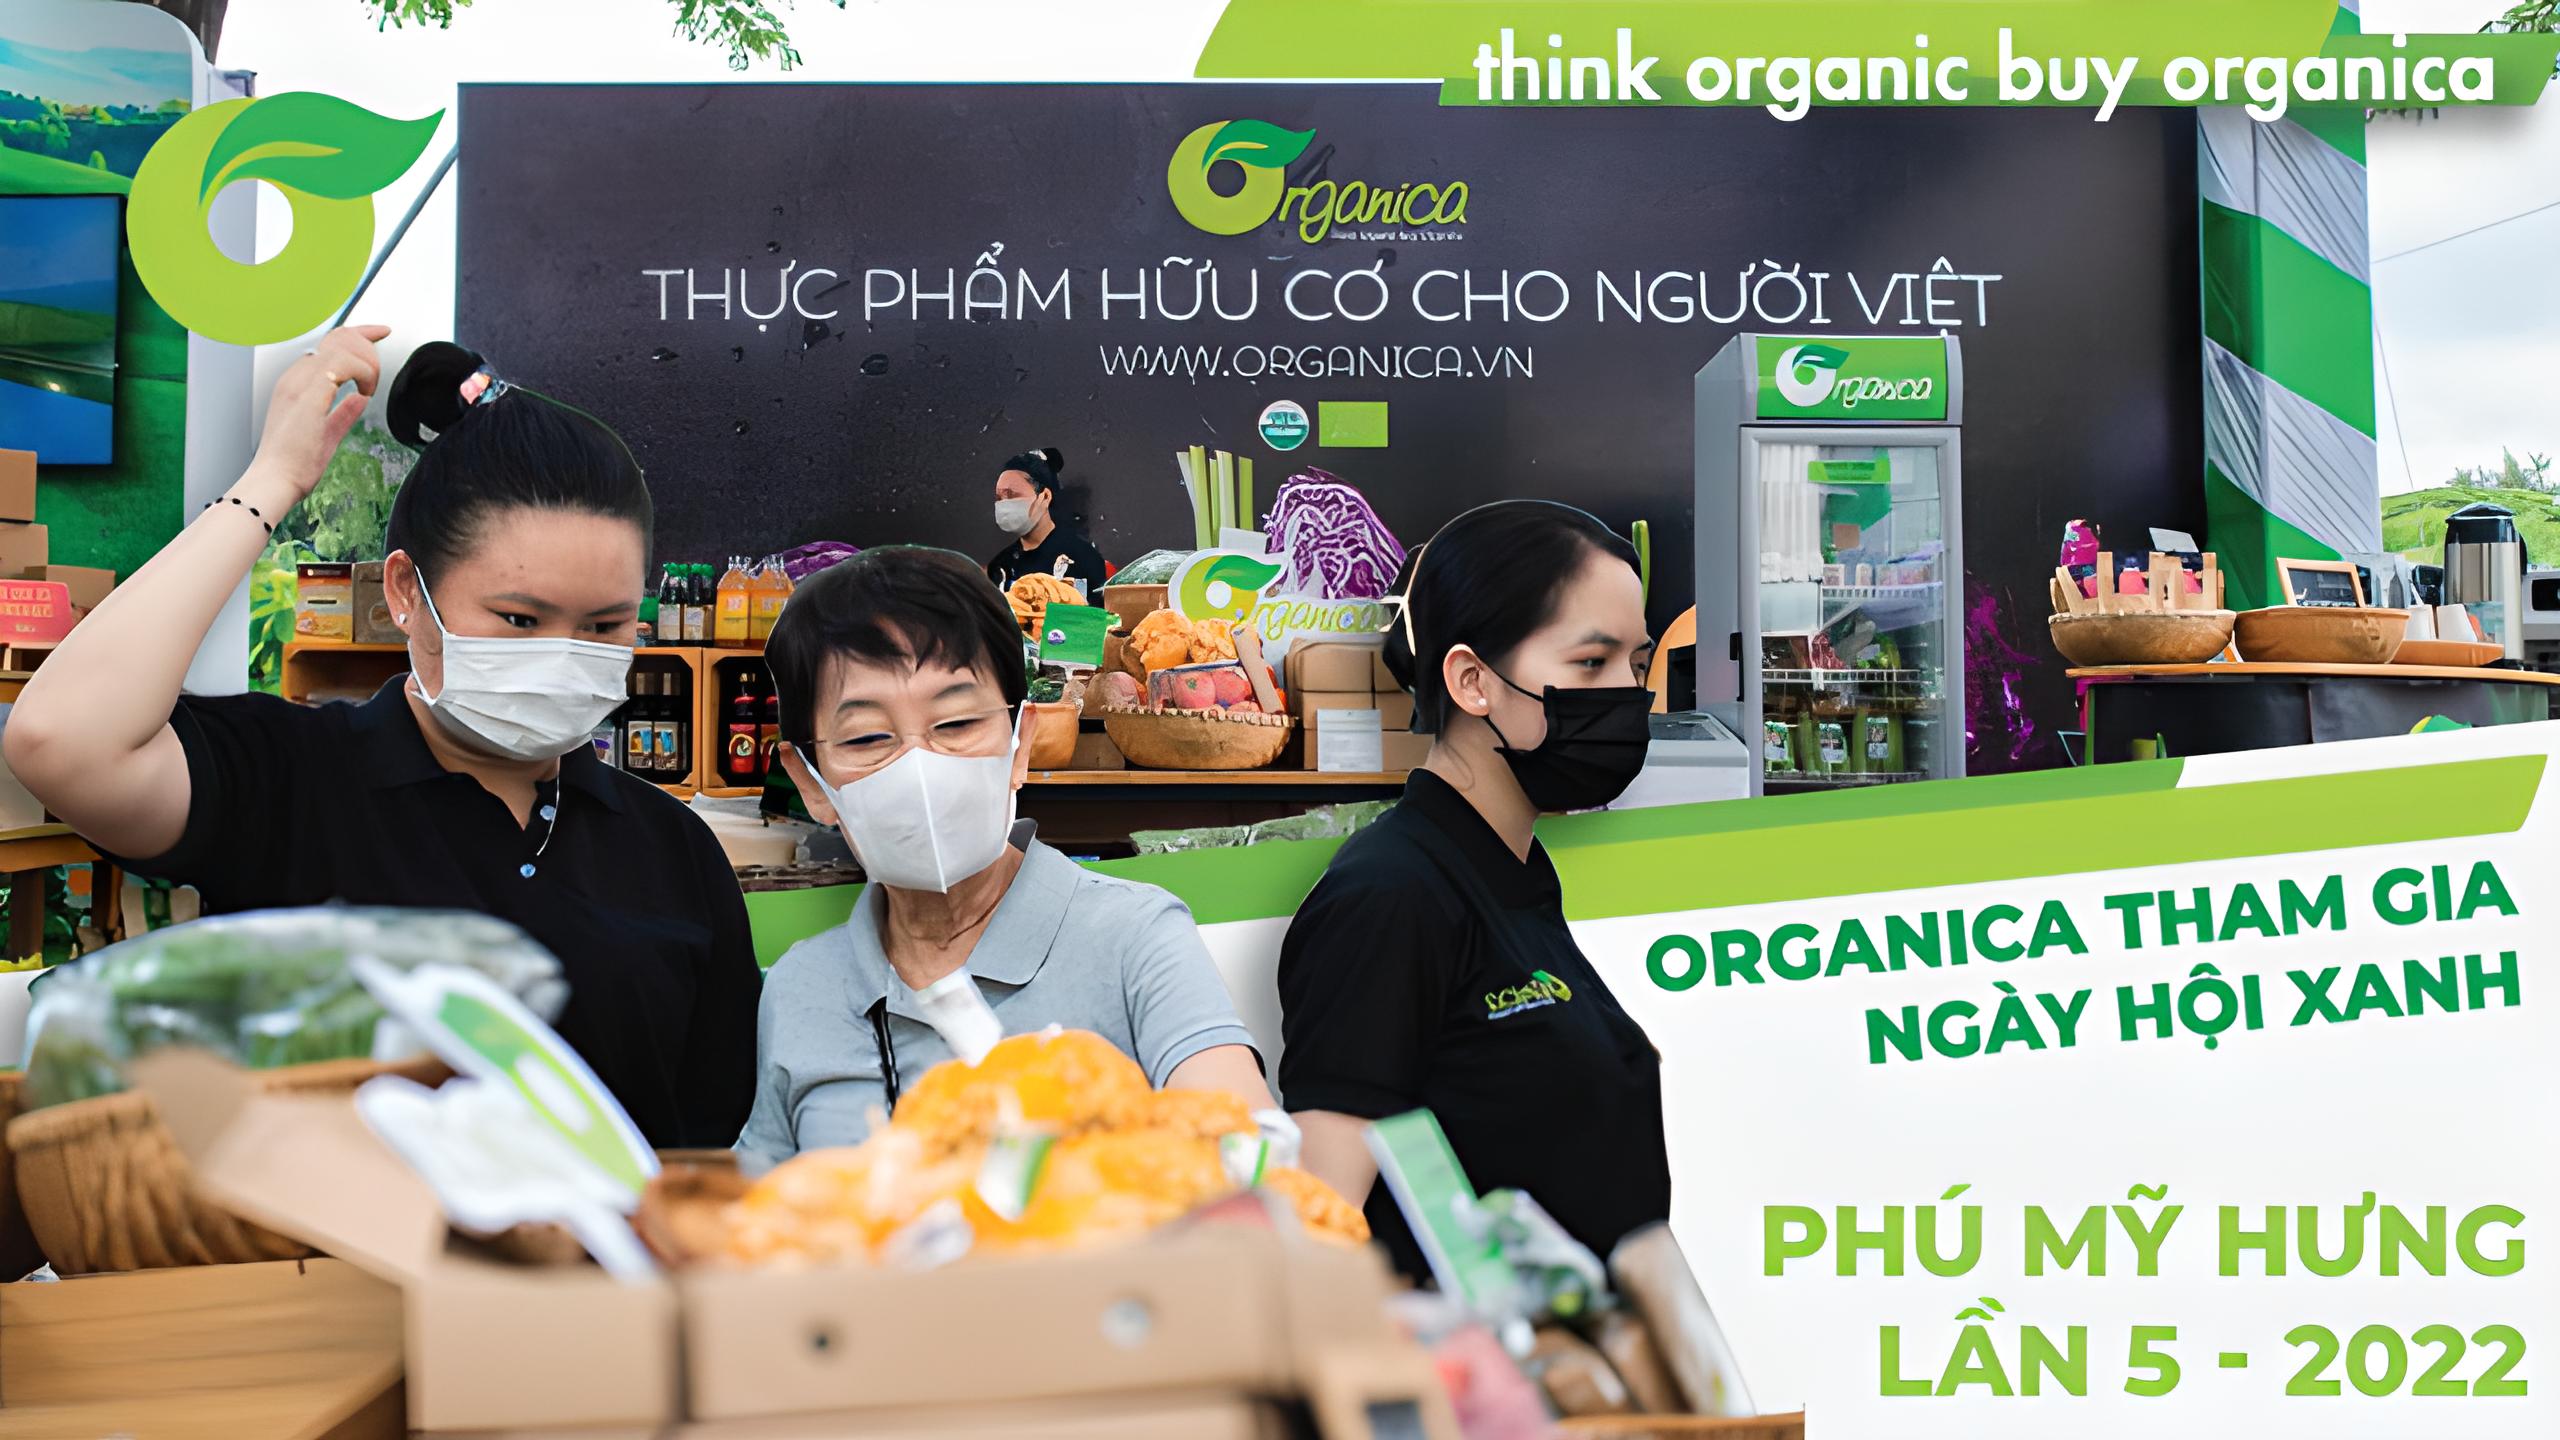 Organica tham gia Ngày hội xanh Phú Mỹ Hưng lần 5 - 2022